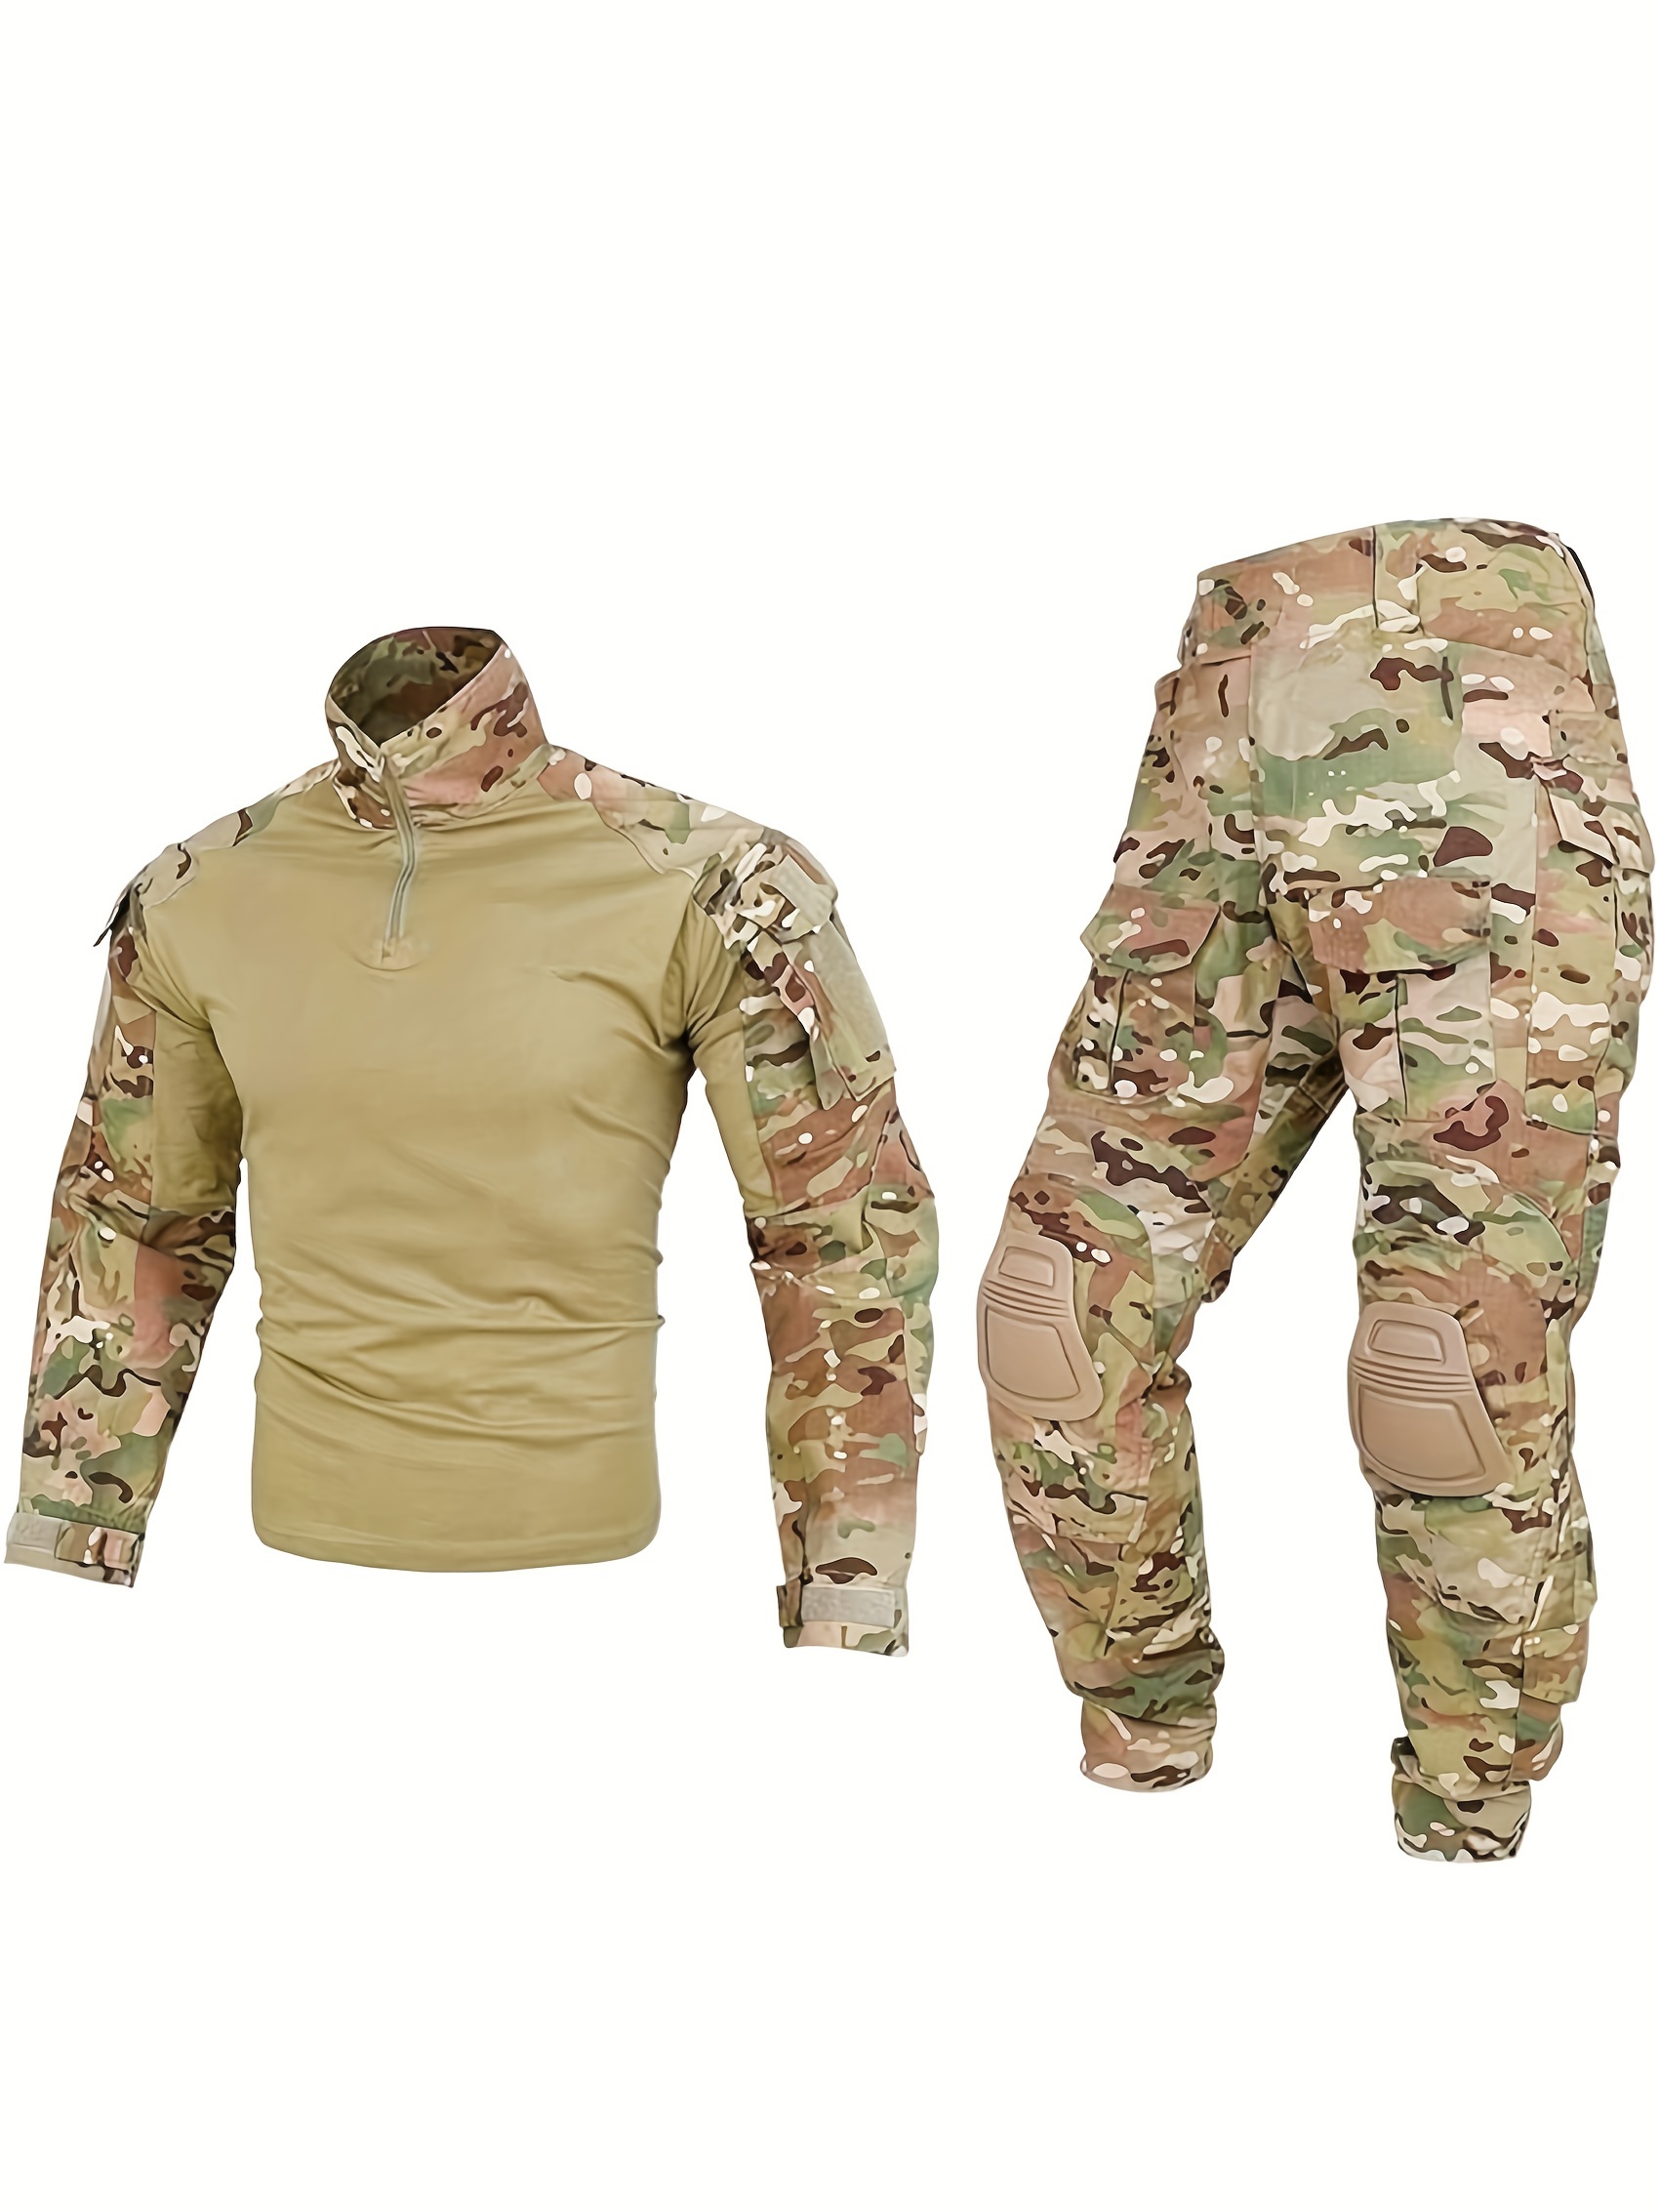 Pantalones tácticos militares de combate G2 (Envío gratis) – Tienda Militar